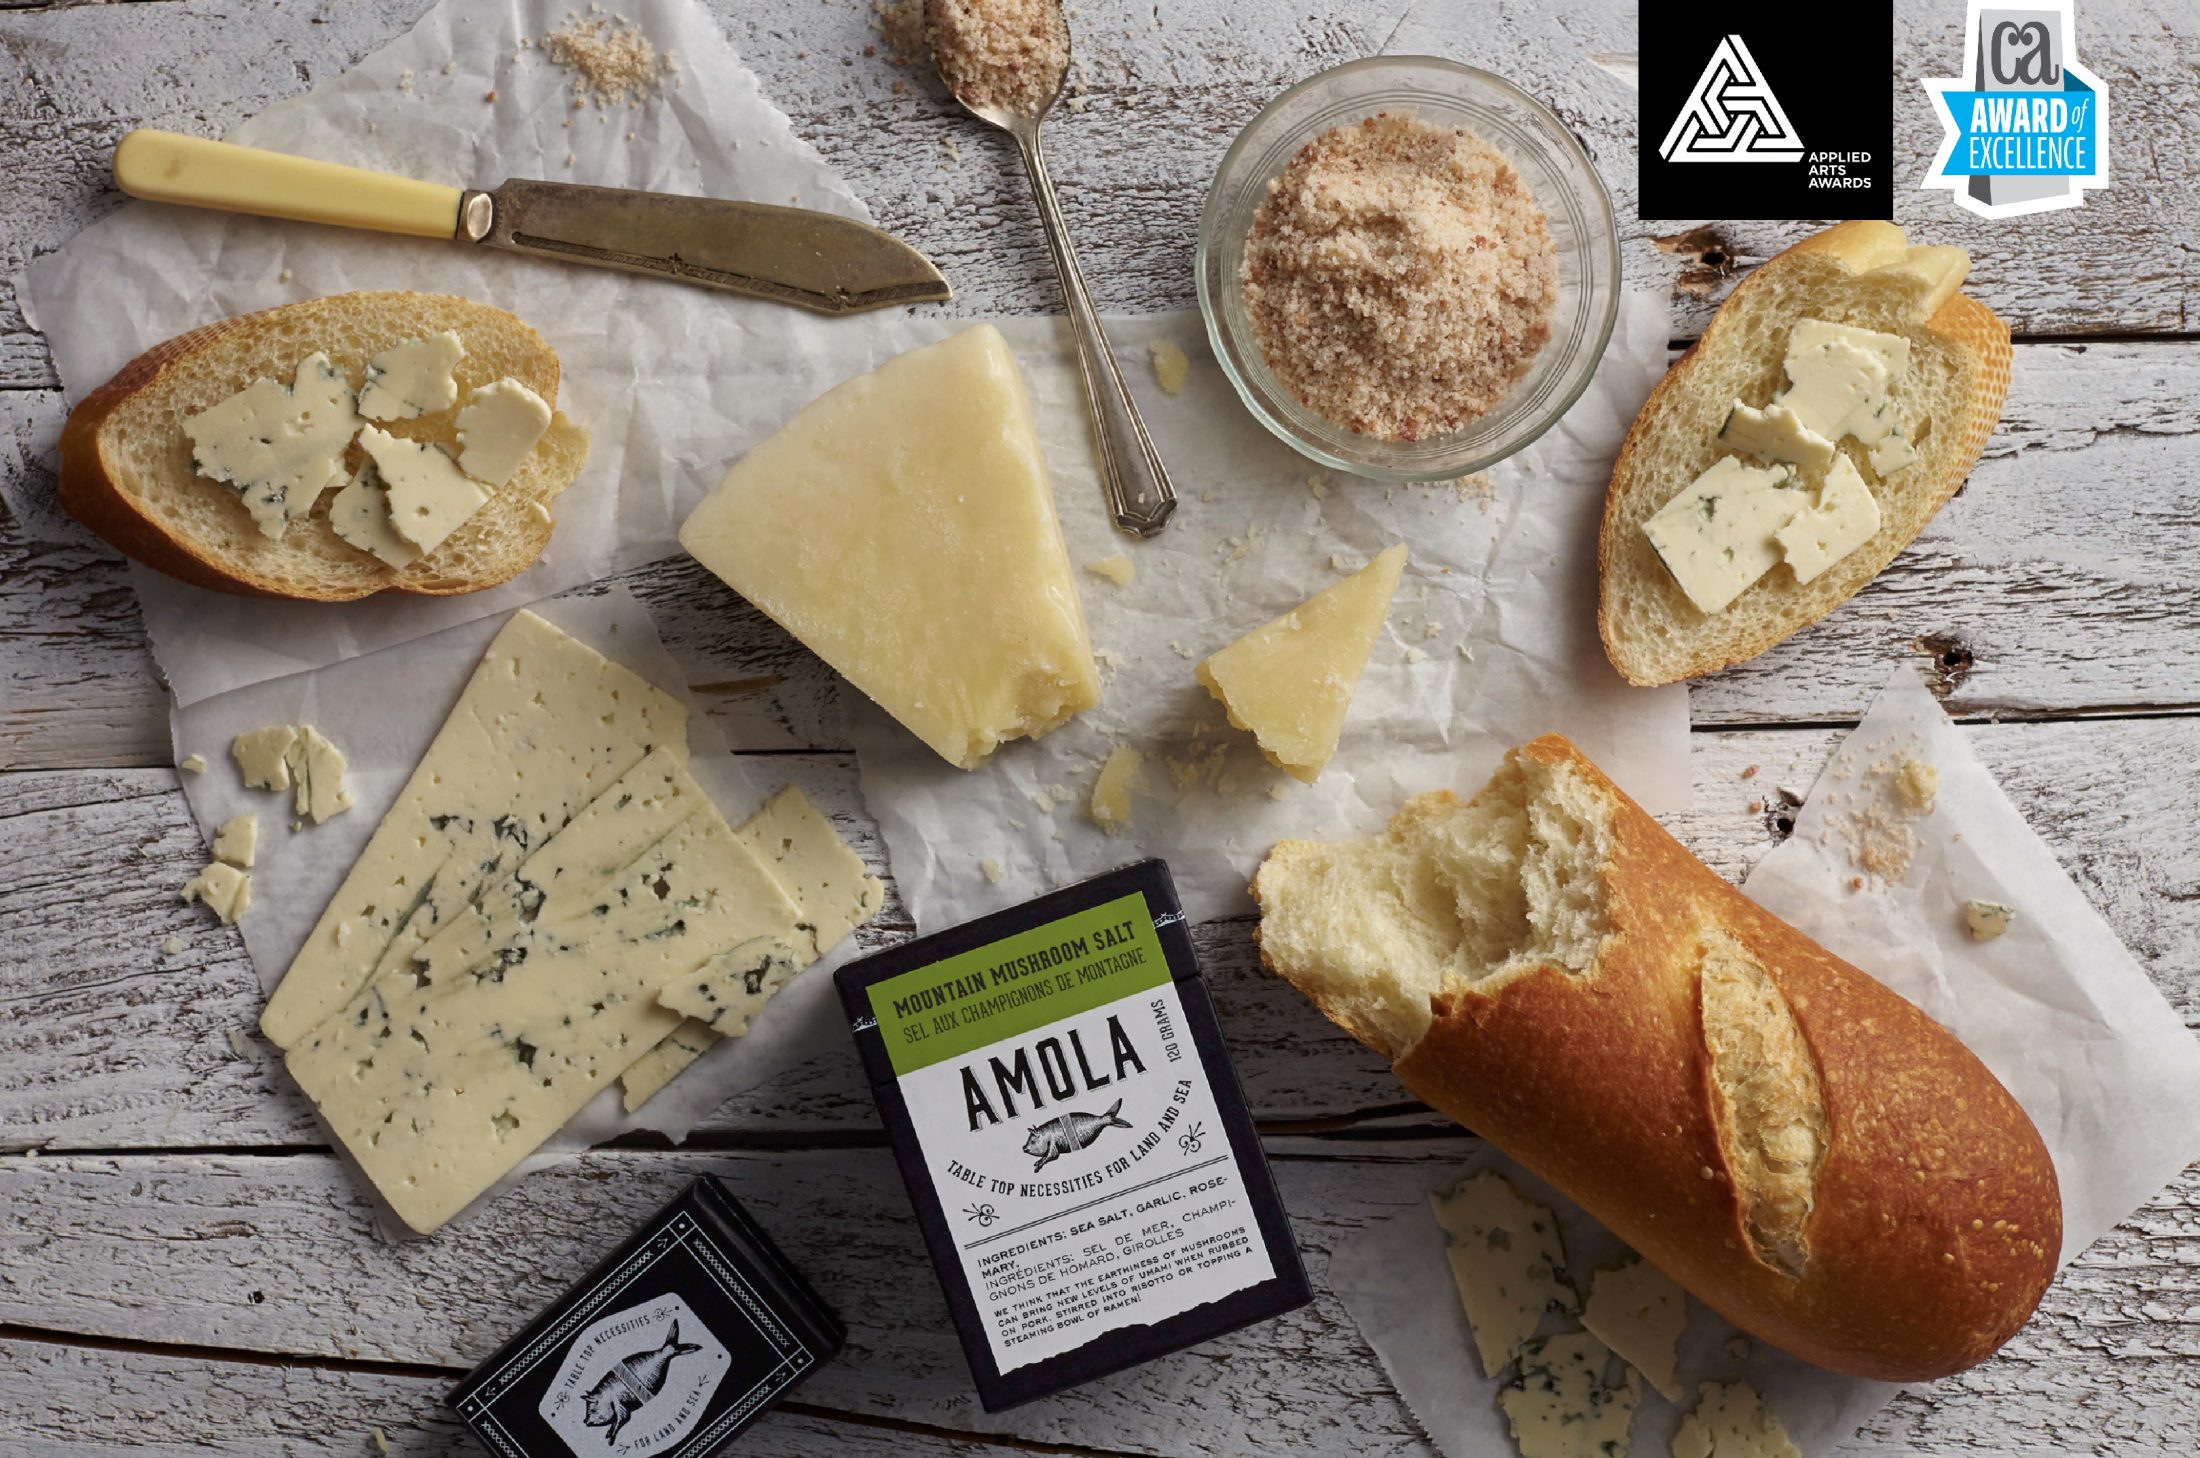 Award winning branding and packaging design for Amola salt. 